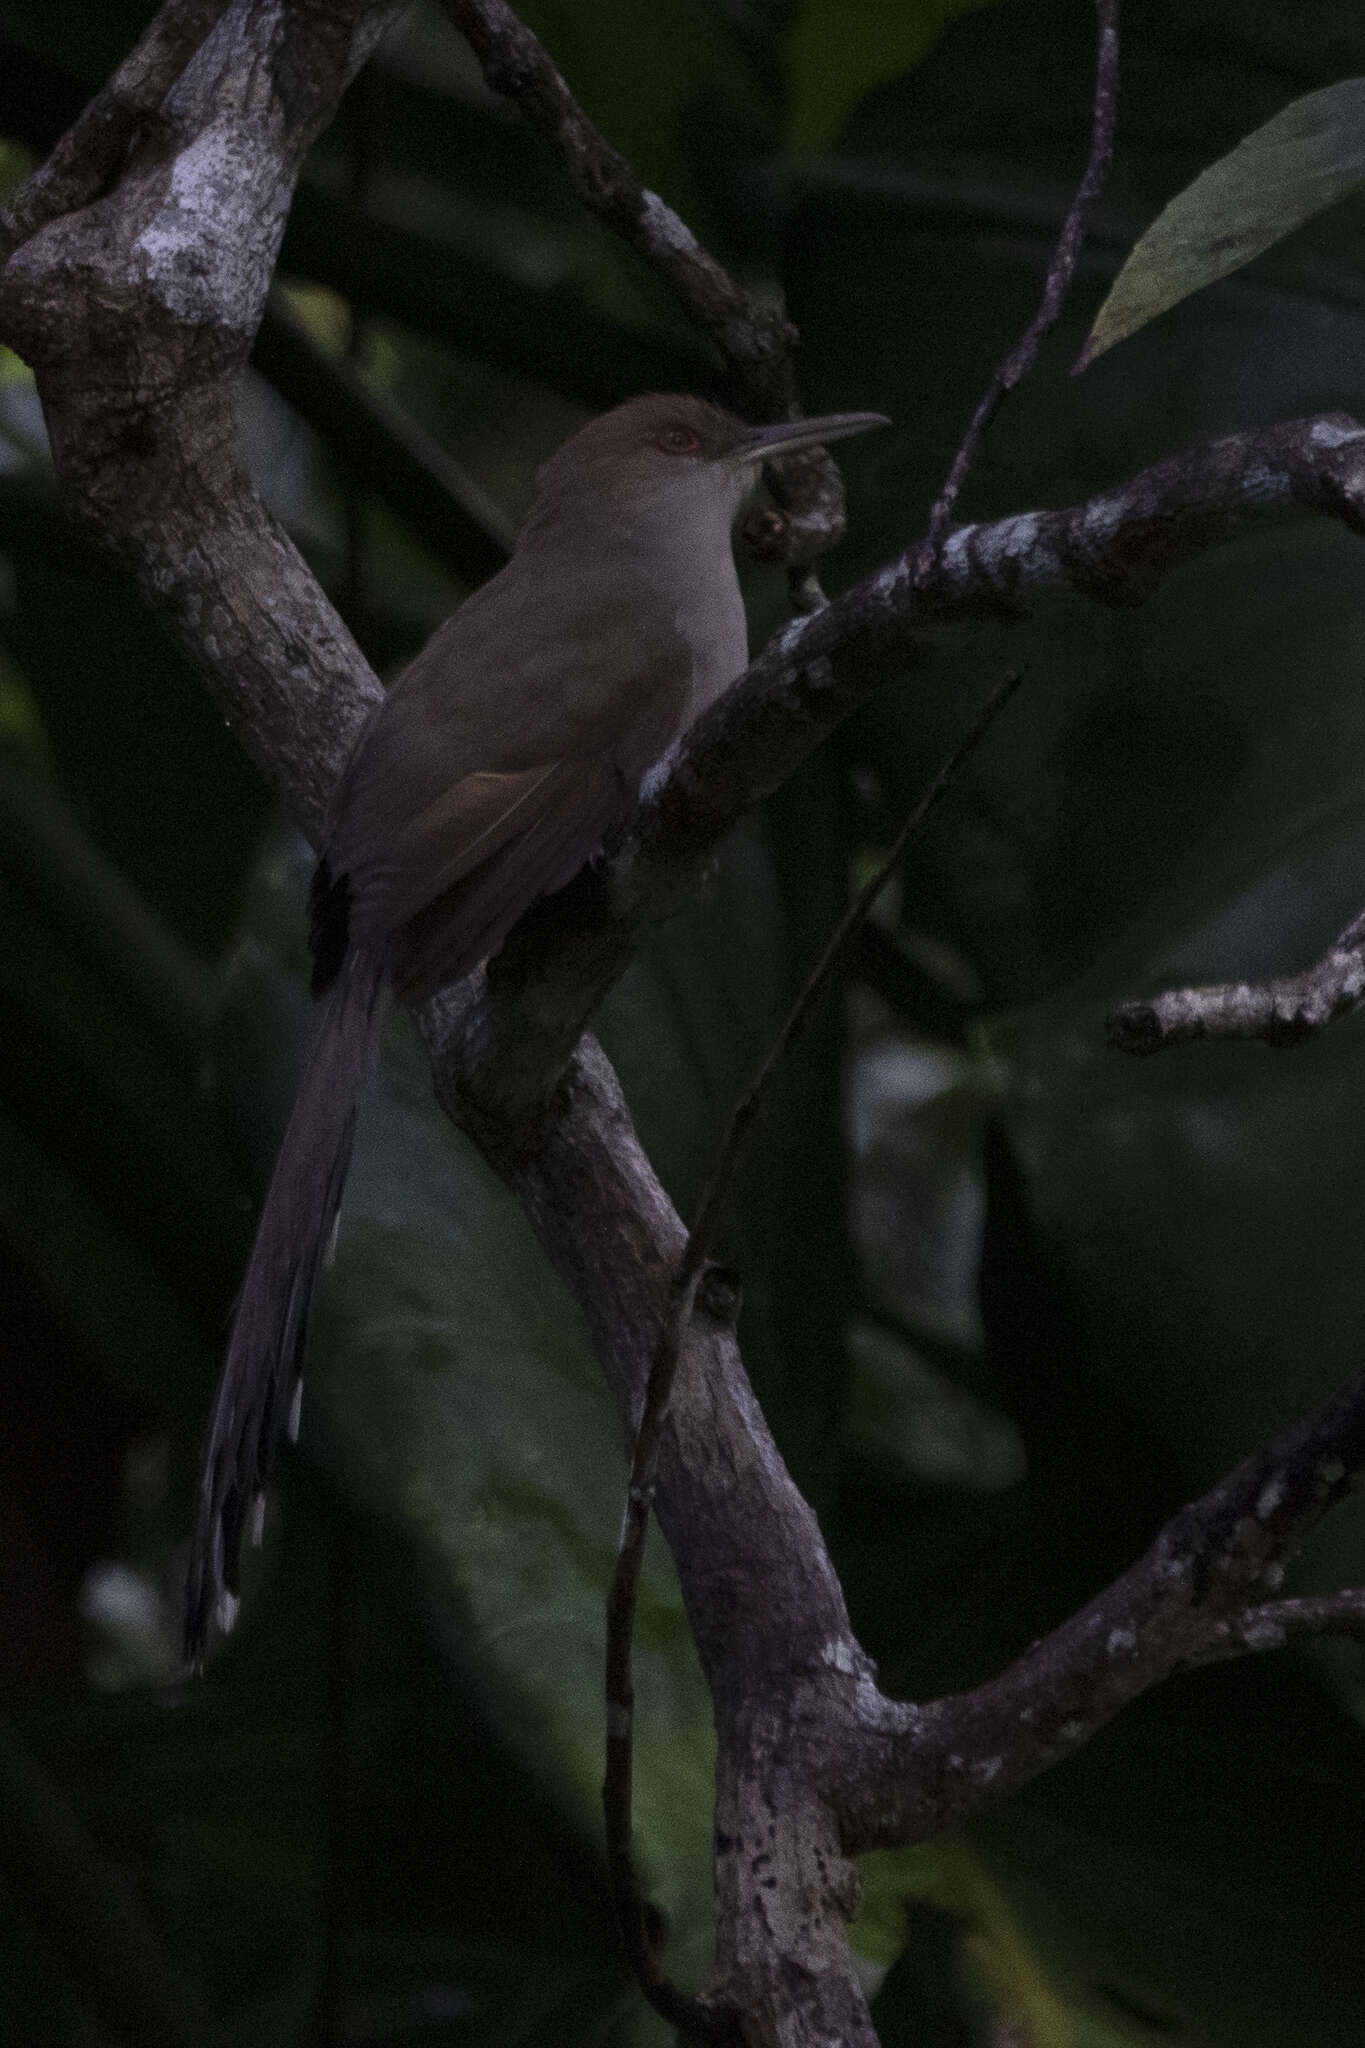 Image of Puerto Rican Lizard Cuckoo